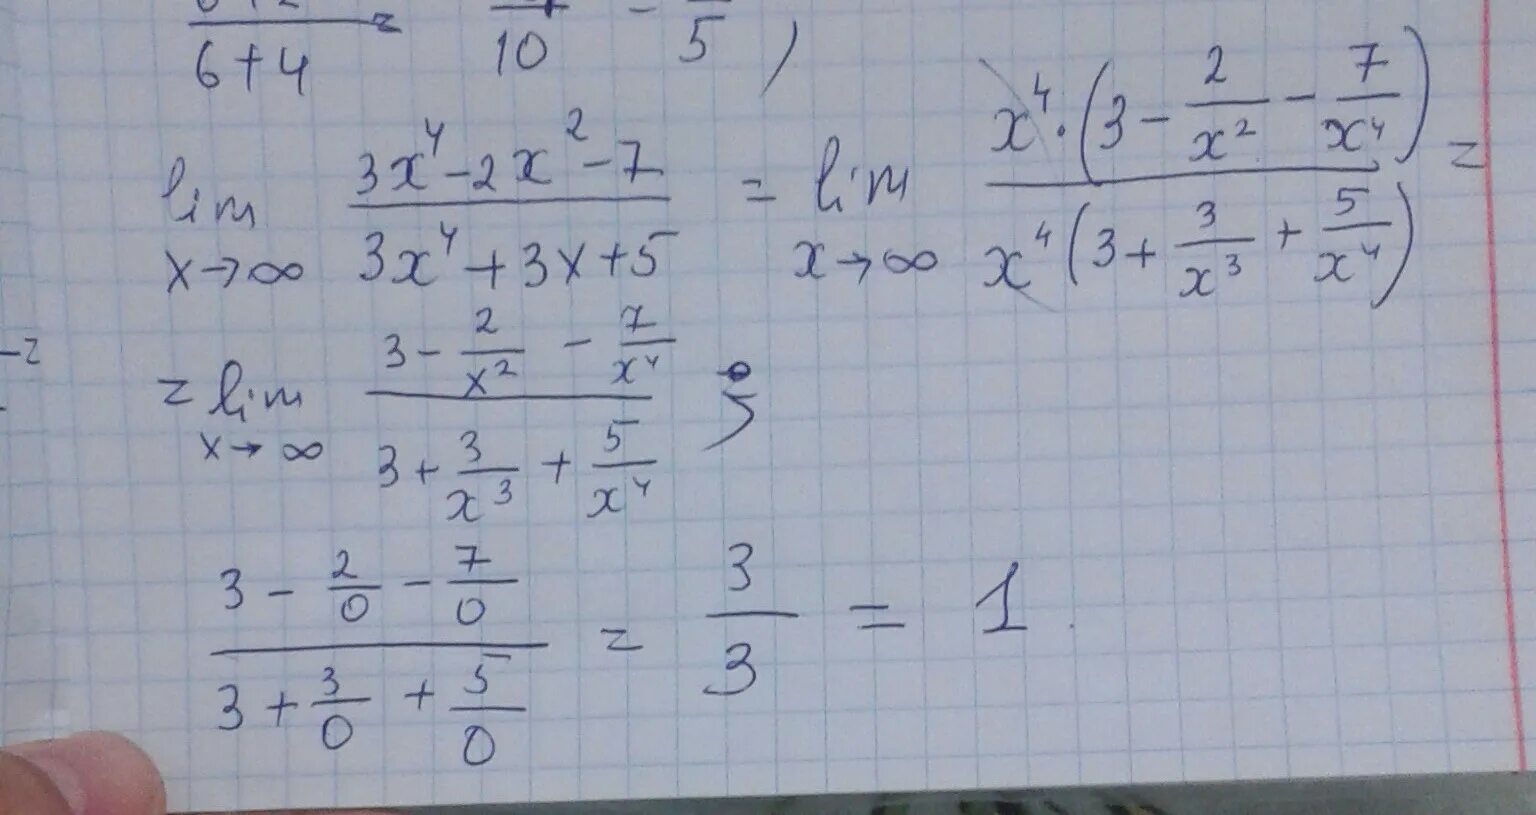 3 4x 5 21 2x. Lim x стремится к бесконечности 2/x 2+3x. Lim x стремится к бесконечности x^2-4x+3/x+5. Lim x стремиться к бесконечности ( 2x/2x-3)^3x. Lim x стремится к бесконечности 3+x-5x4.